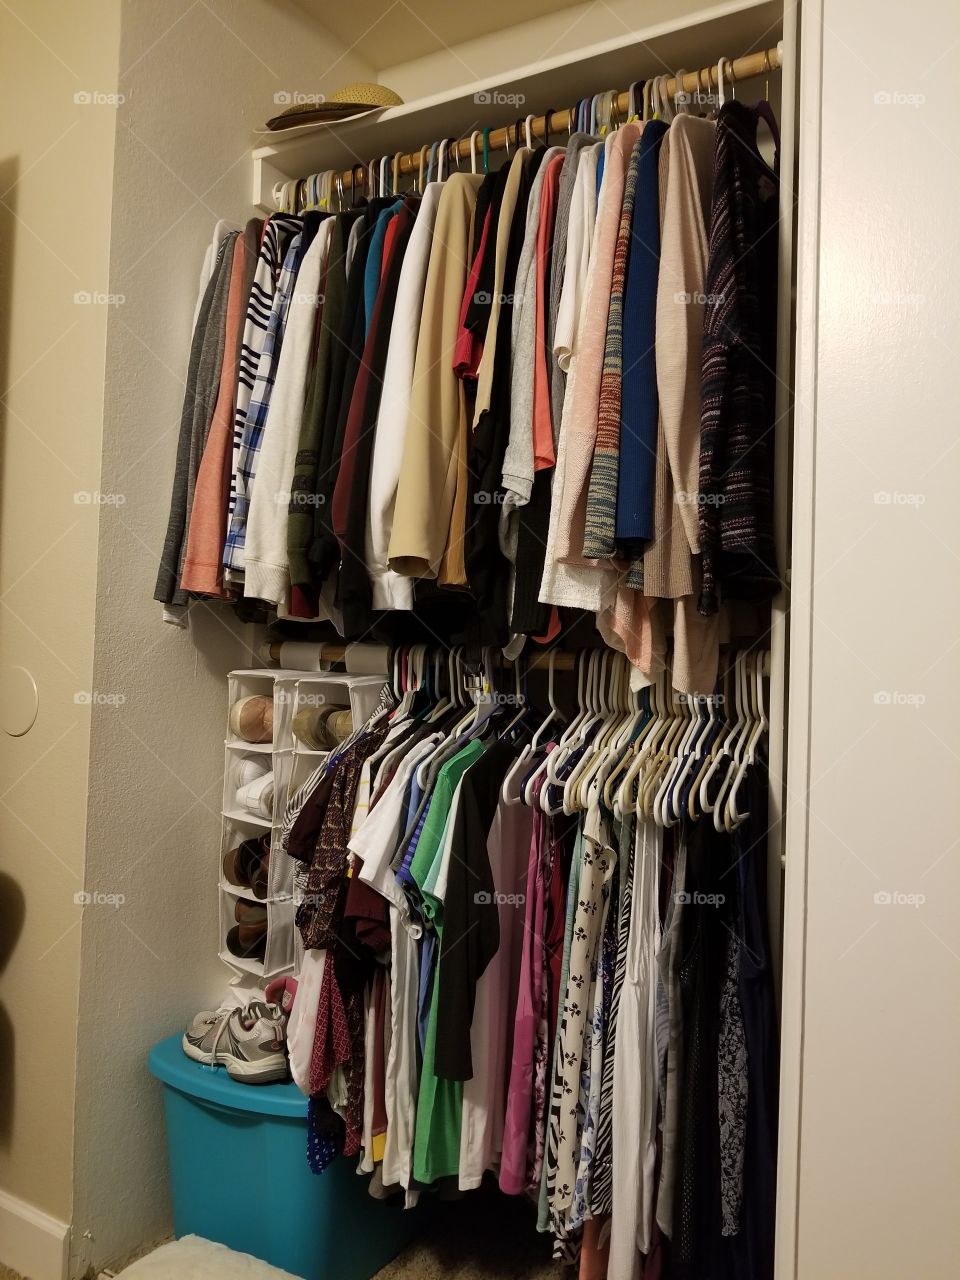 a tidy closet